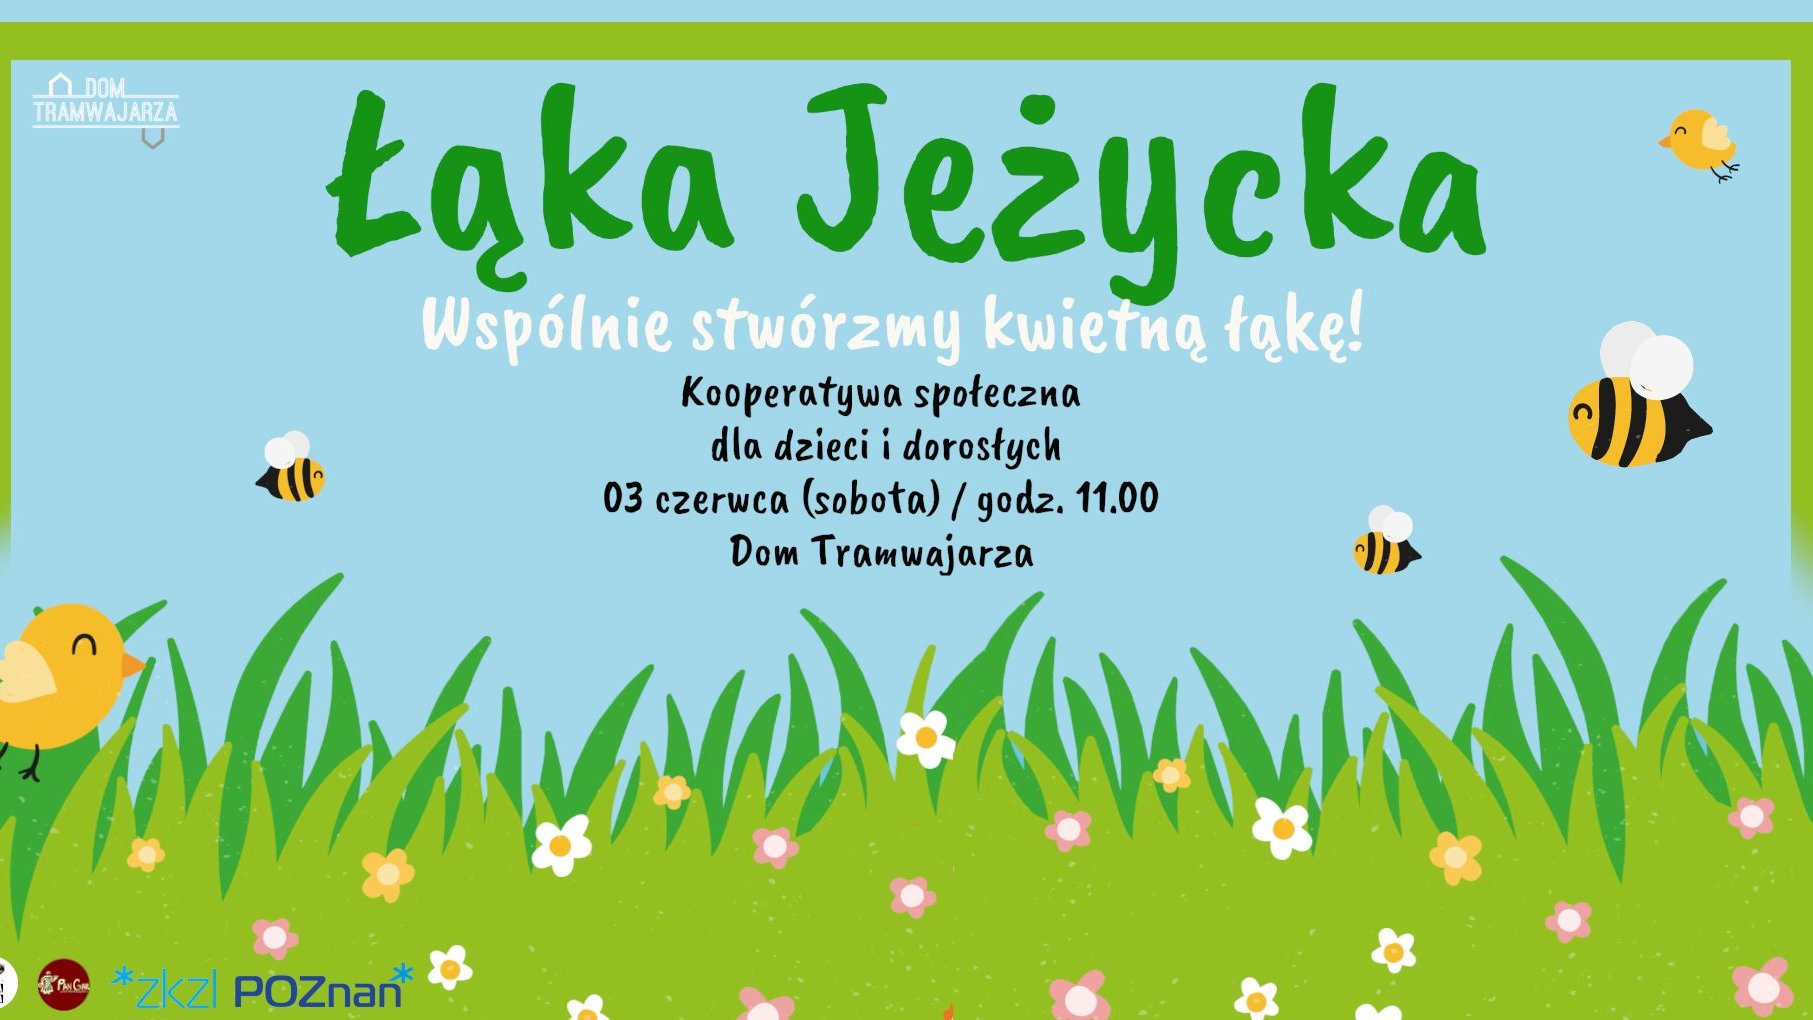 Plakat z informacjami o wydarzeniu oraz elementami graficznymi - trawą, kwiatkami, pszczołami